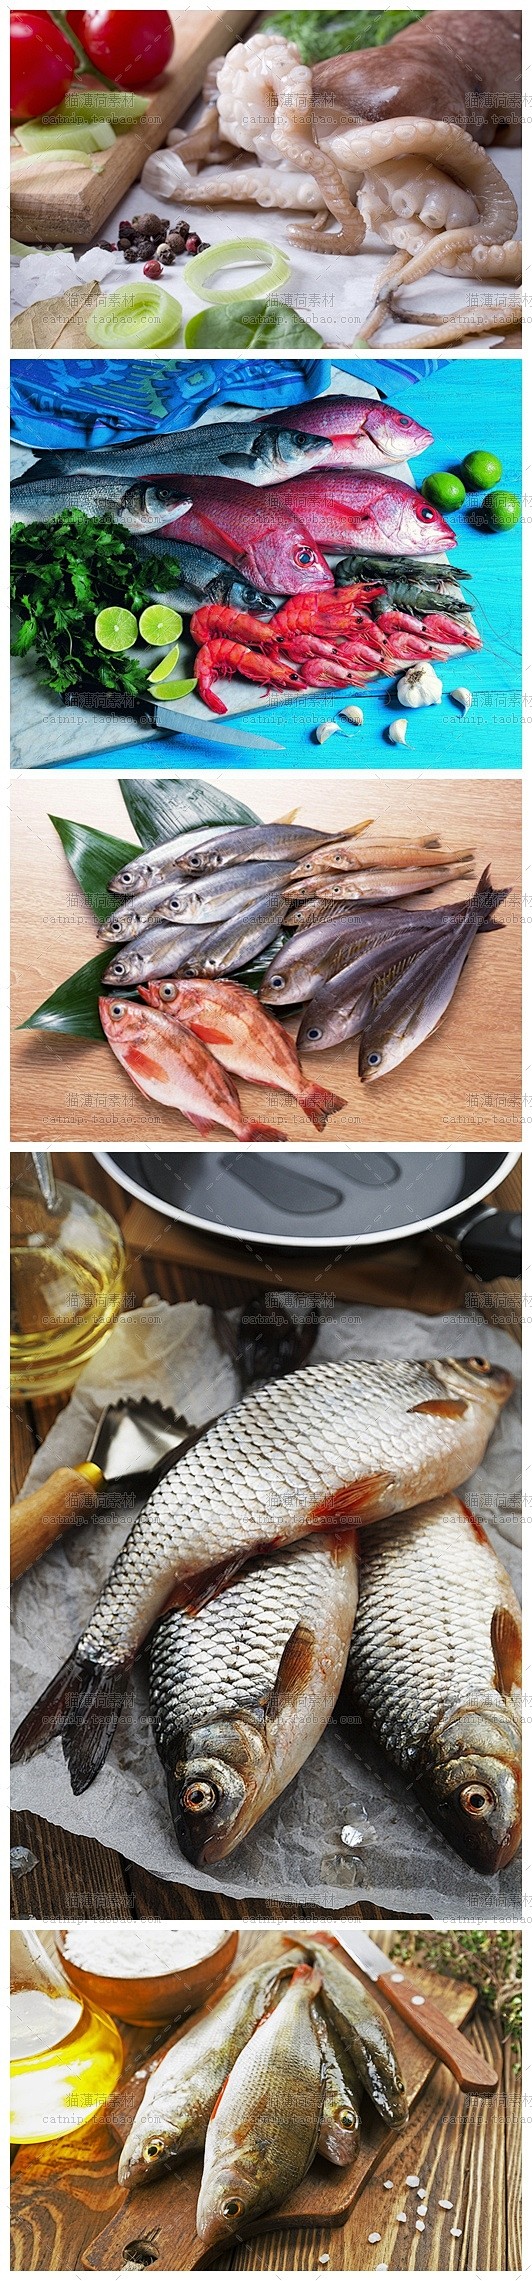 [gq65]30张新海鲜鱼虾鱿鱼食材摄影...